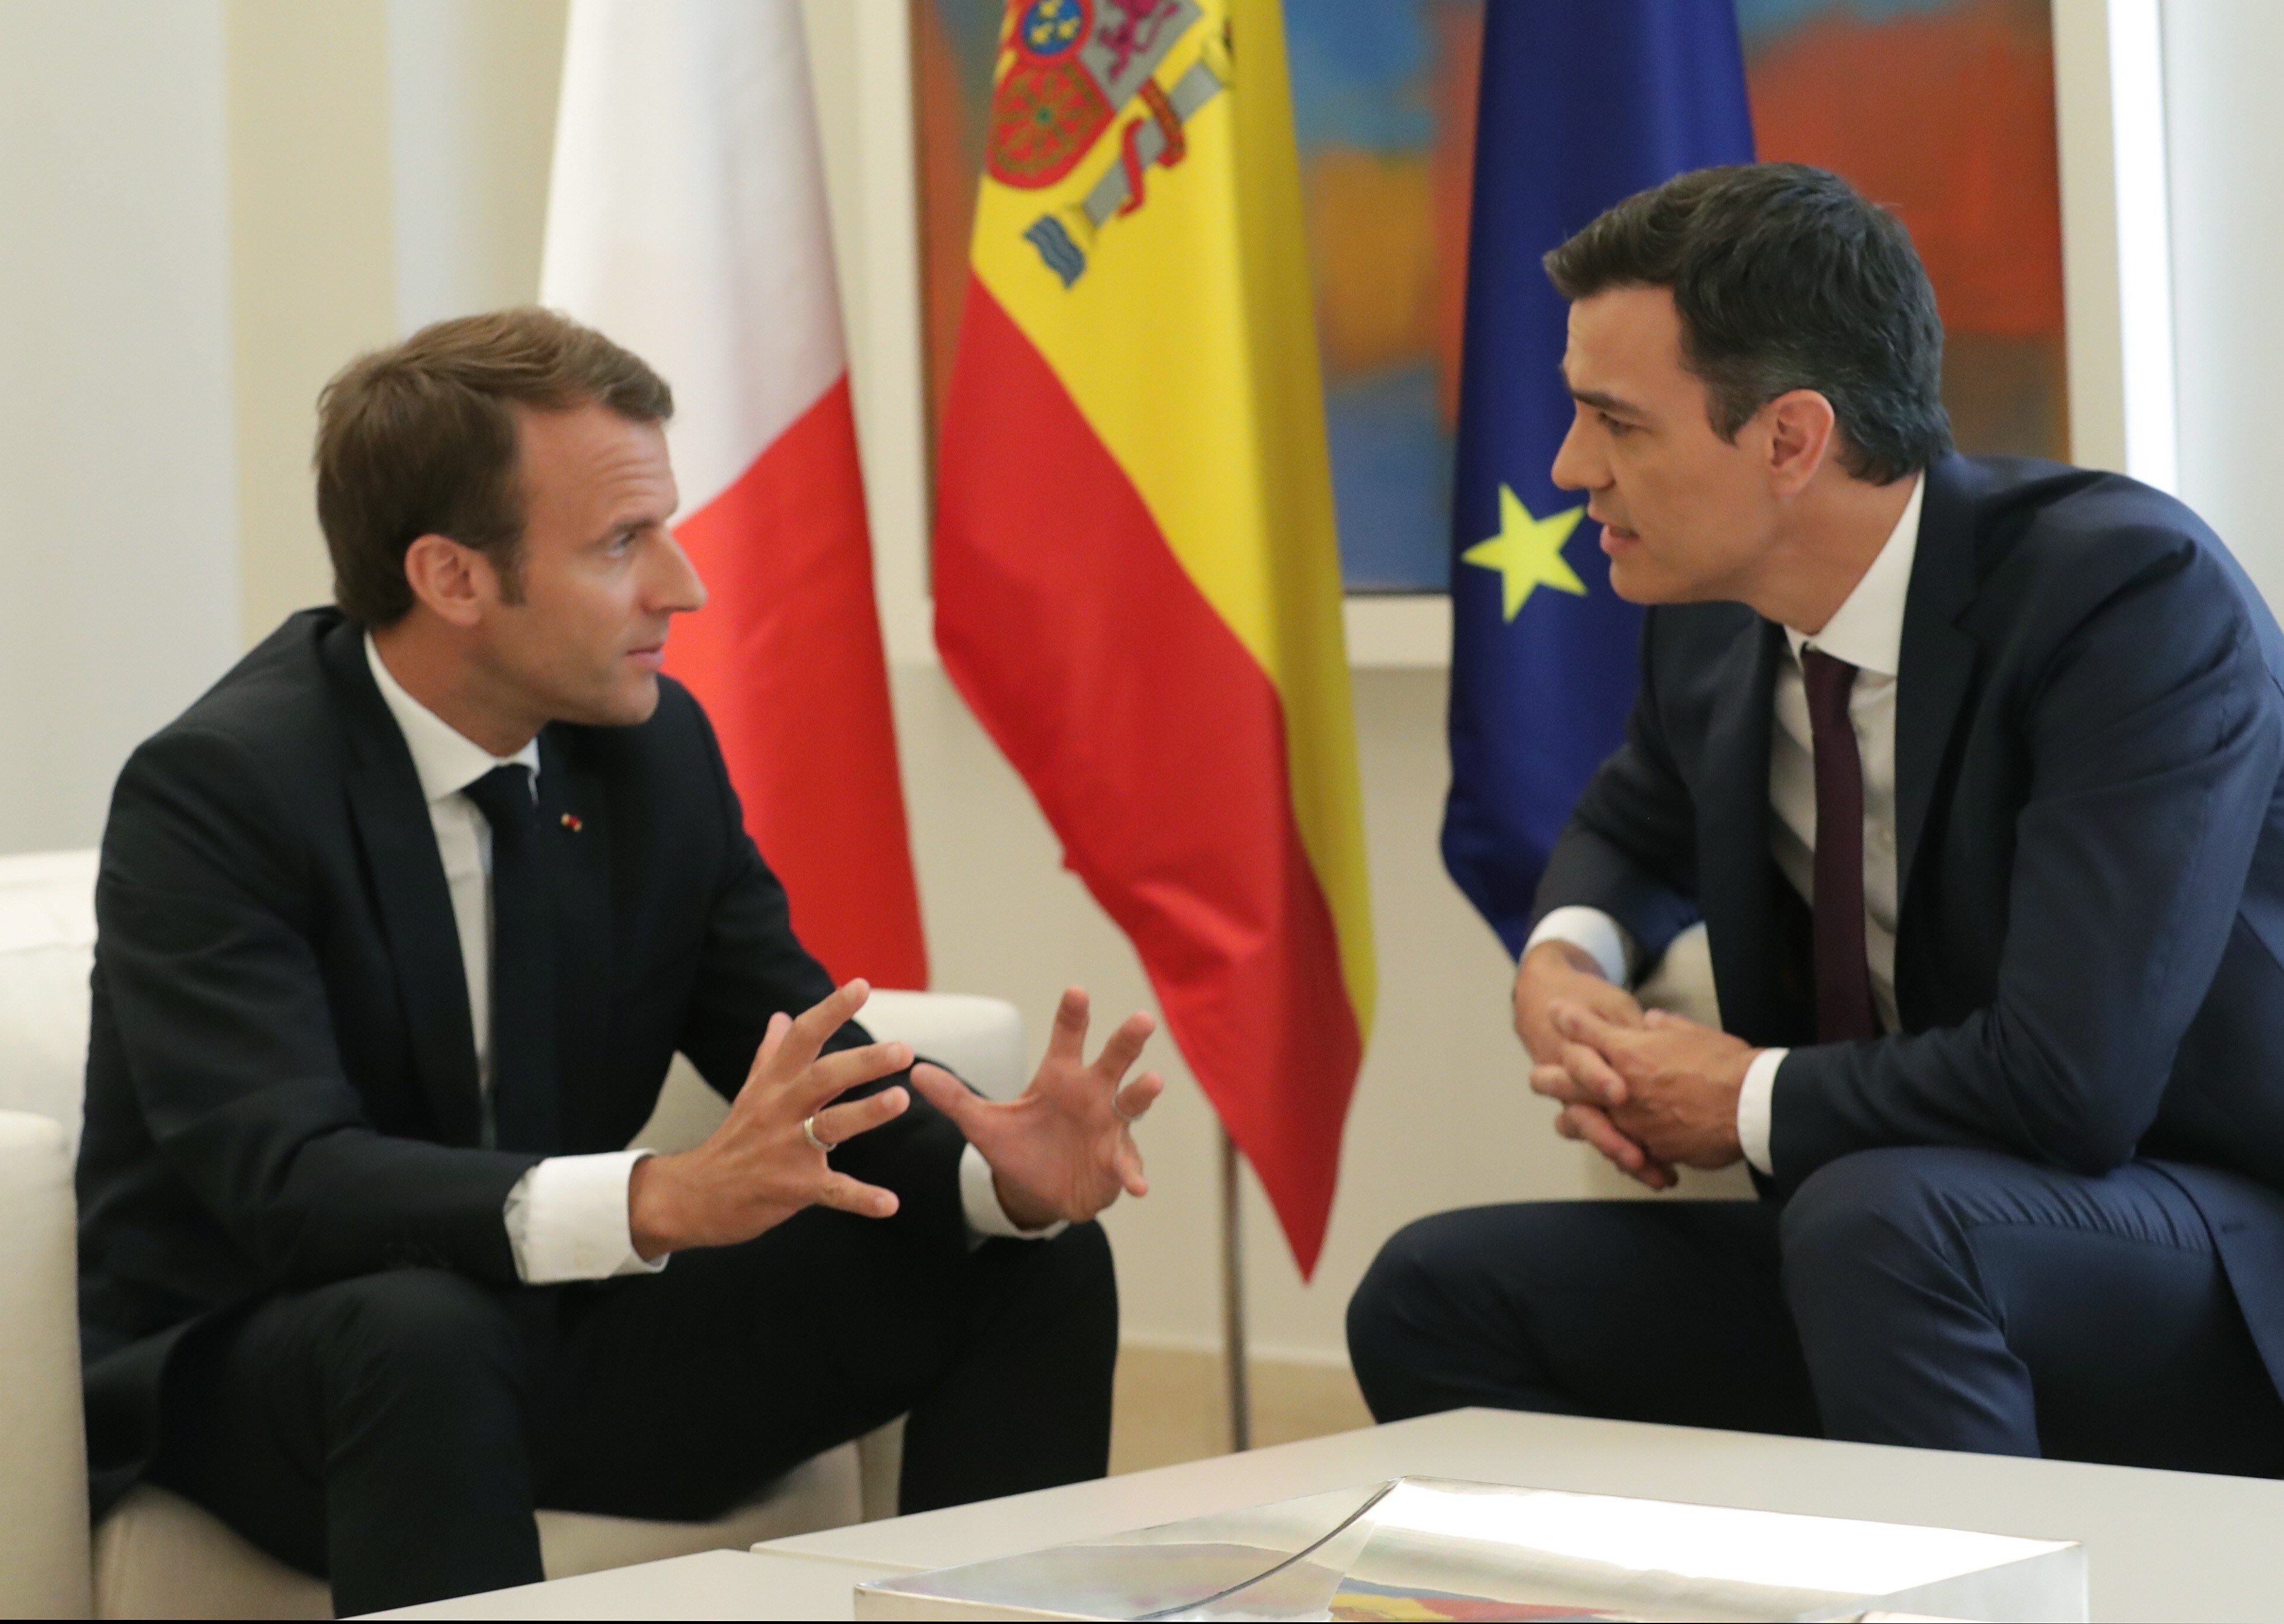 Macron: "Ens uneix l'arrelament comú a l'ordre constitucional"